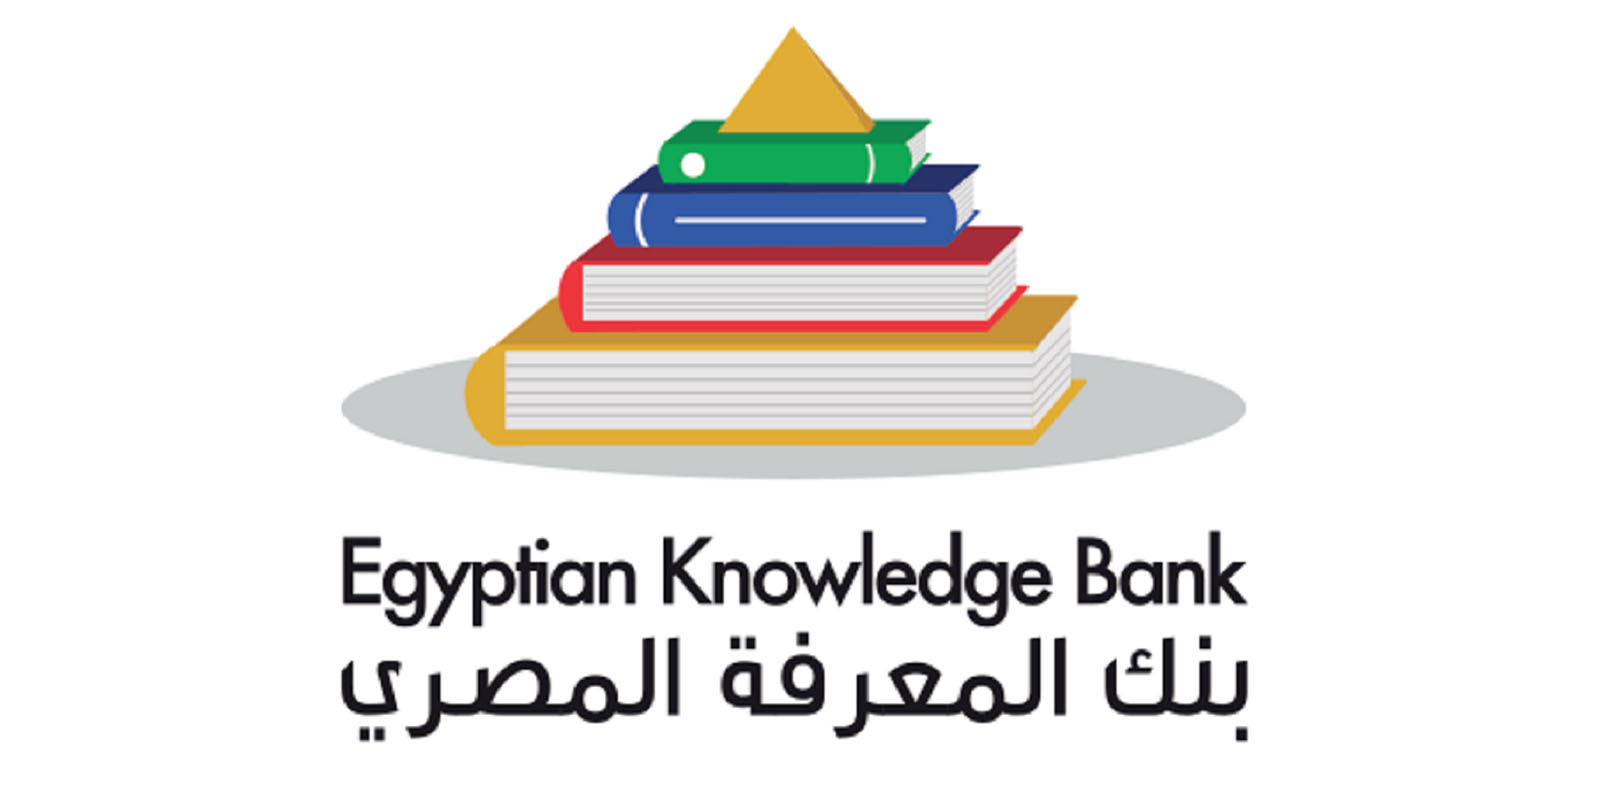   الوزراء: بنك المعرفة له دور محوري في تدعيم محور بناء الإنسان المصري